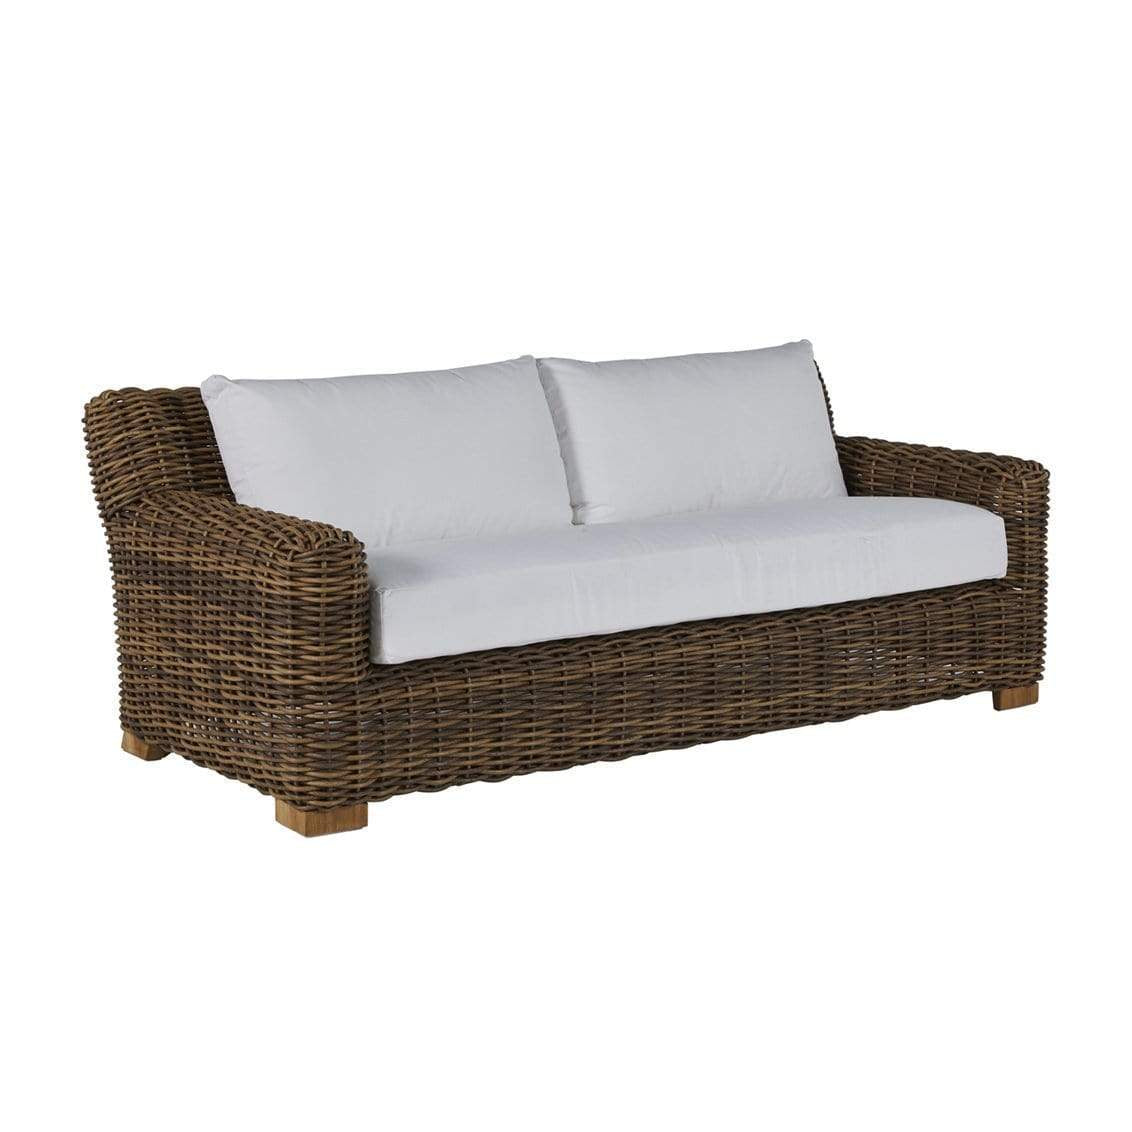 Summer Classics Montauk Sofa Furniture summer-classics-321782+C197H3884W3884